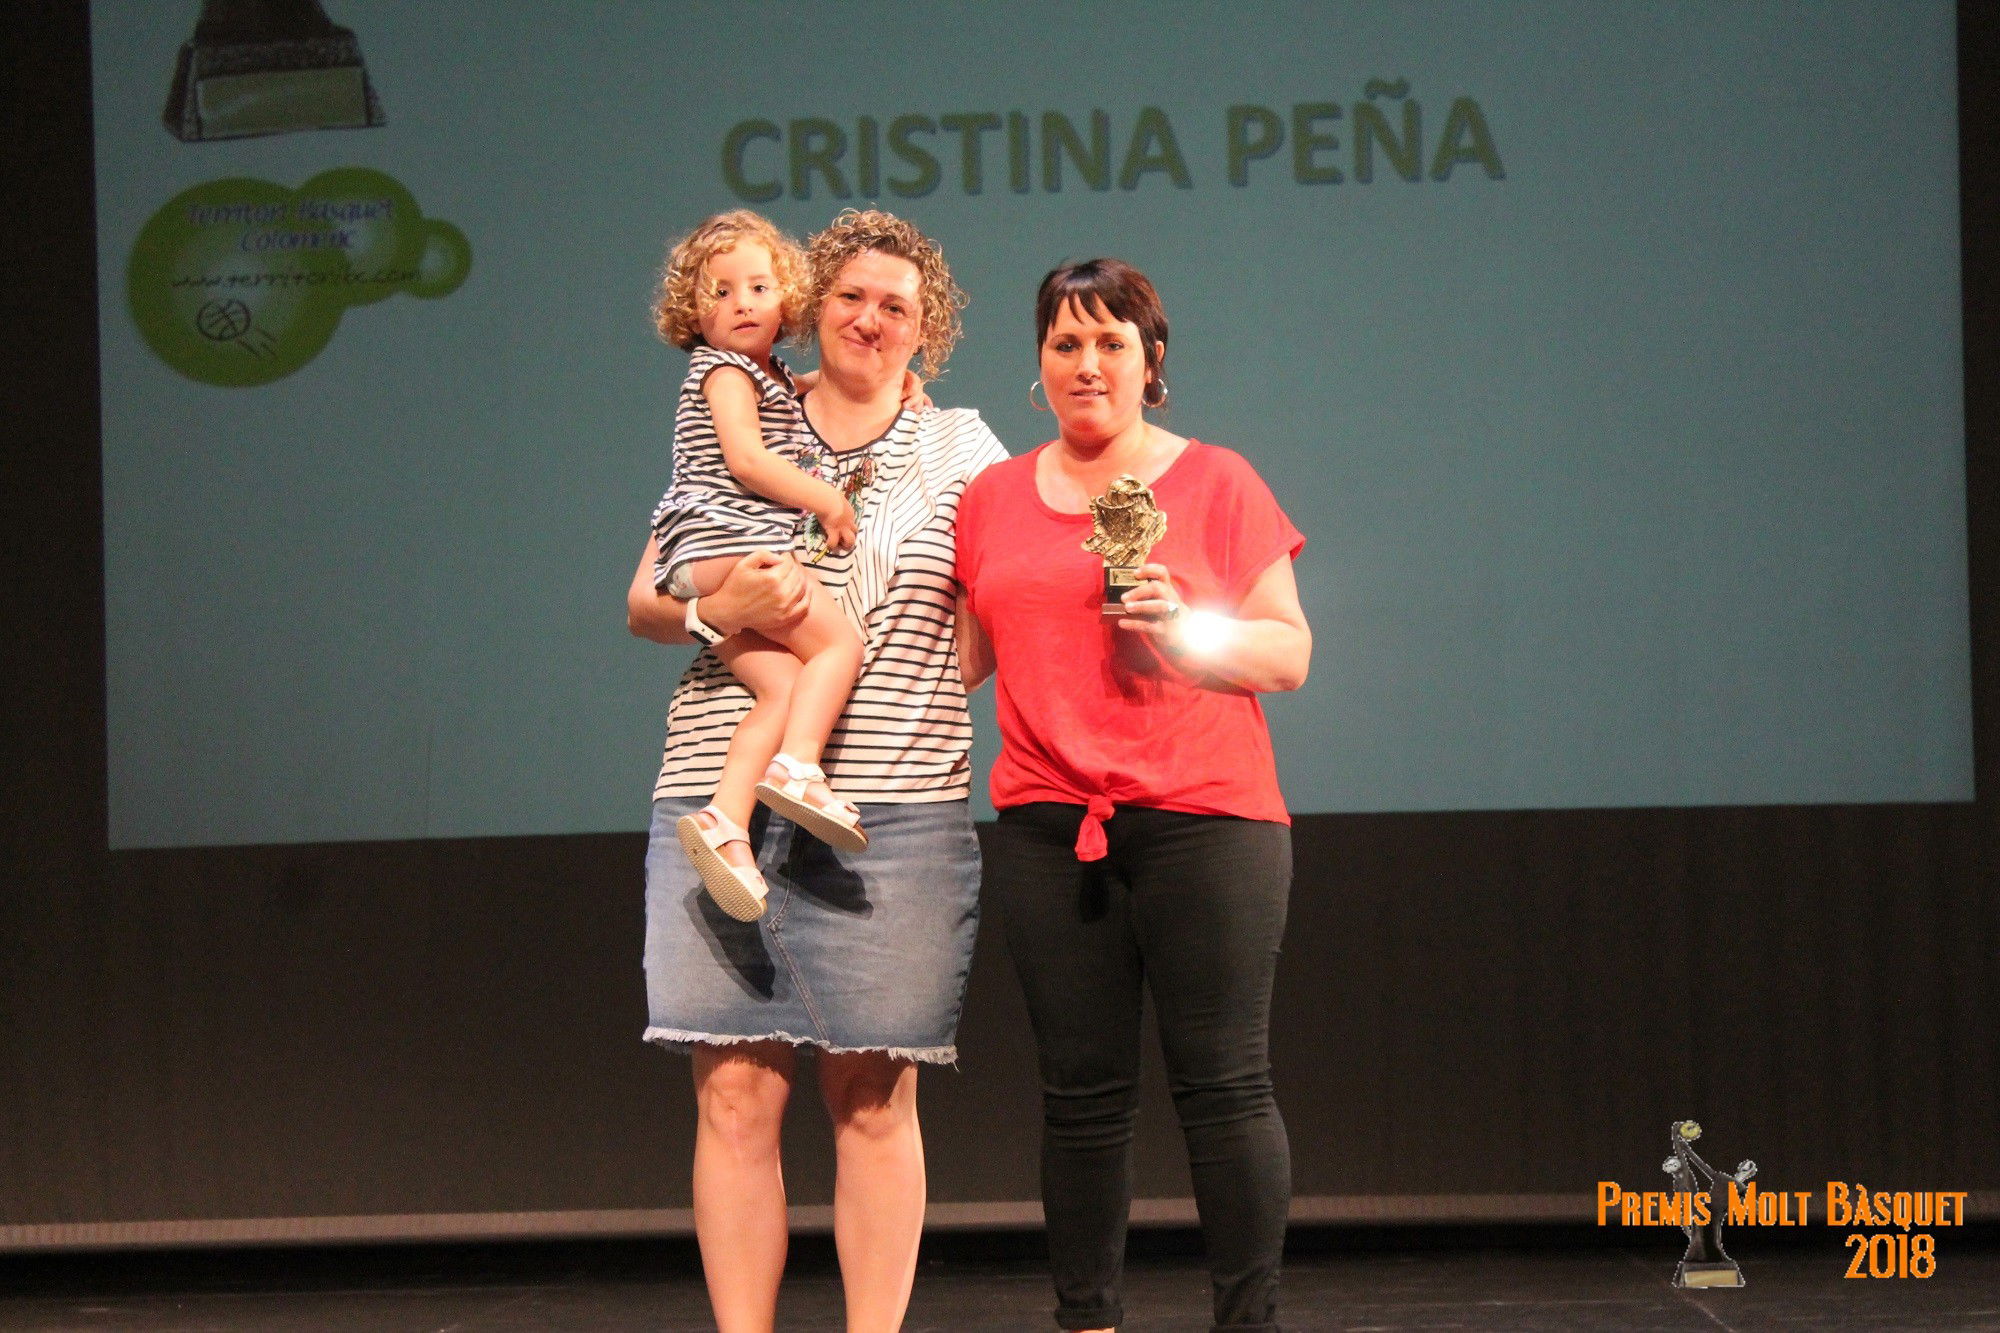 Premi Can Xaconet " A Tota una Trajectòria": Cristina Peña